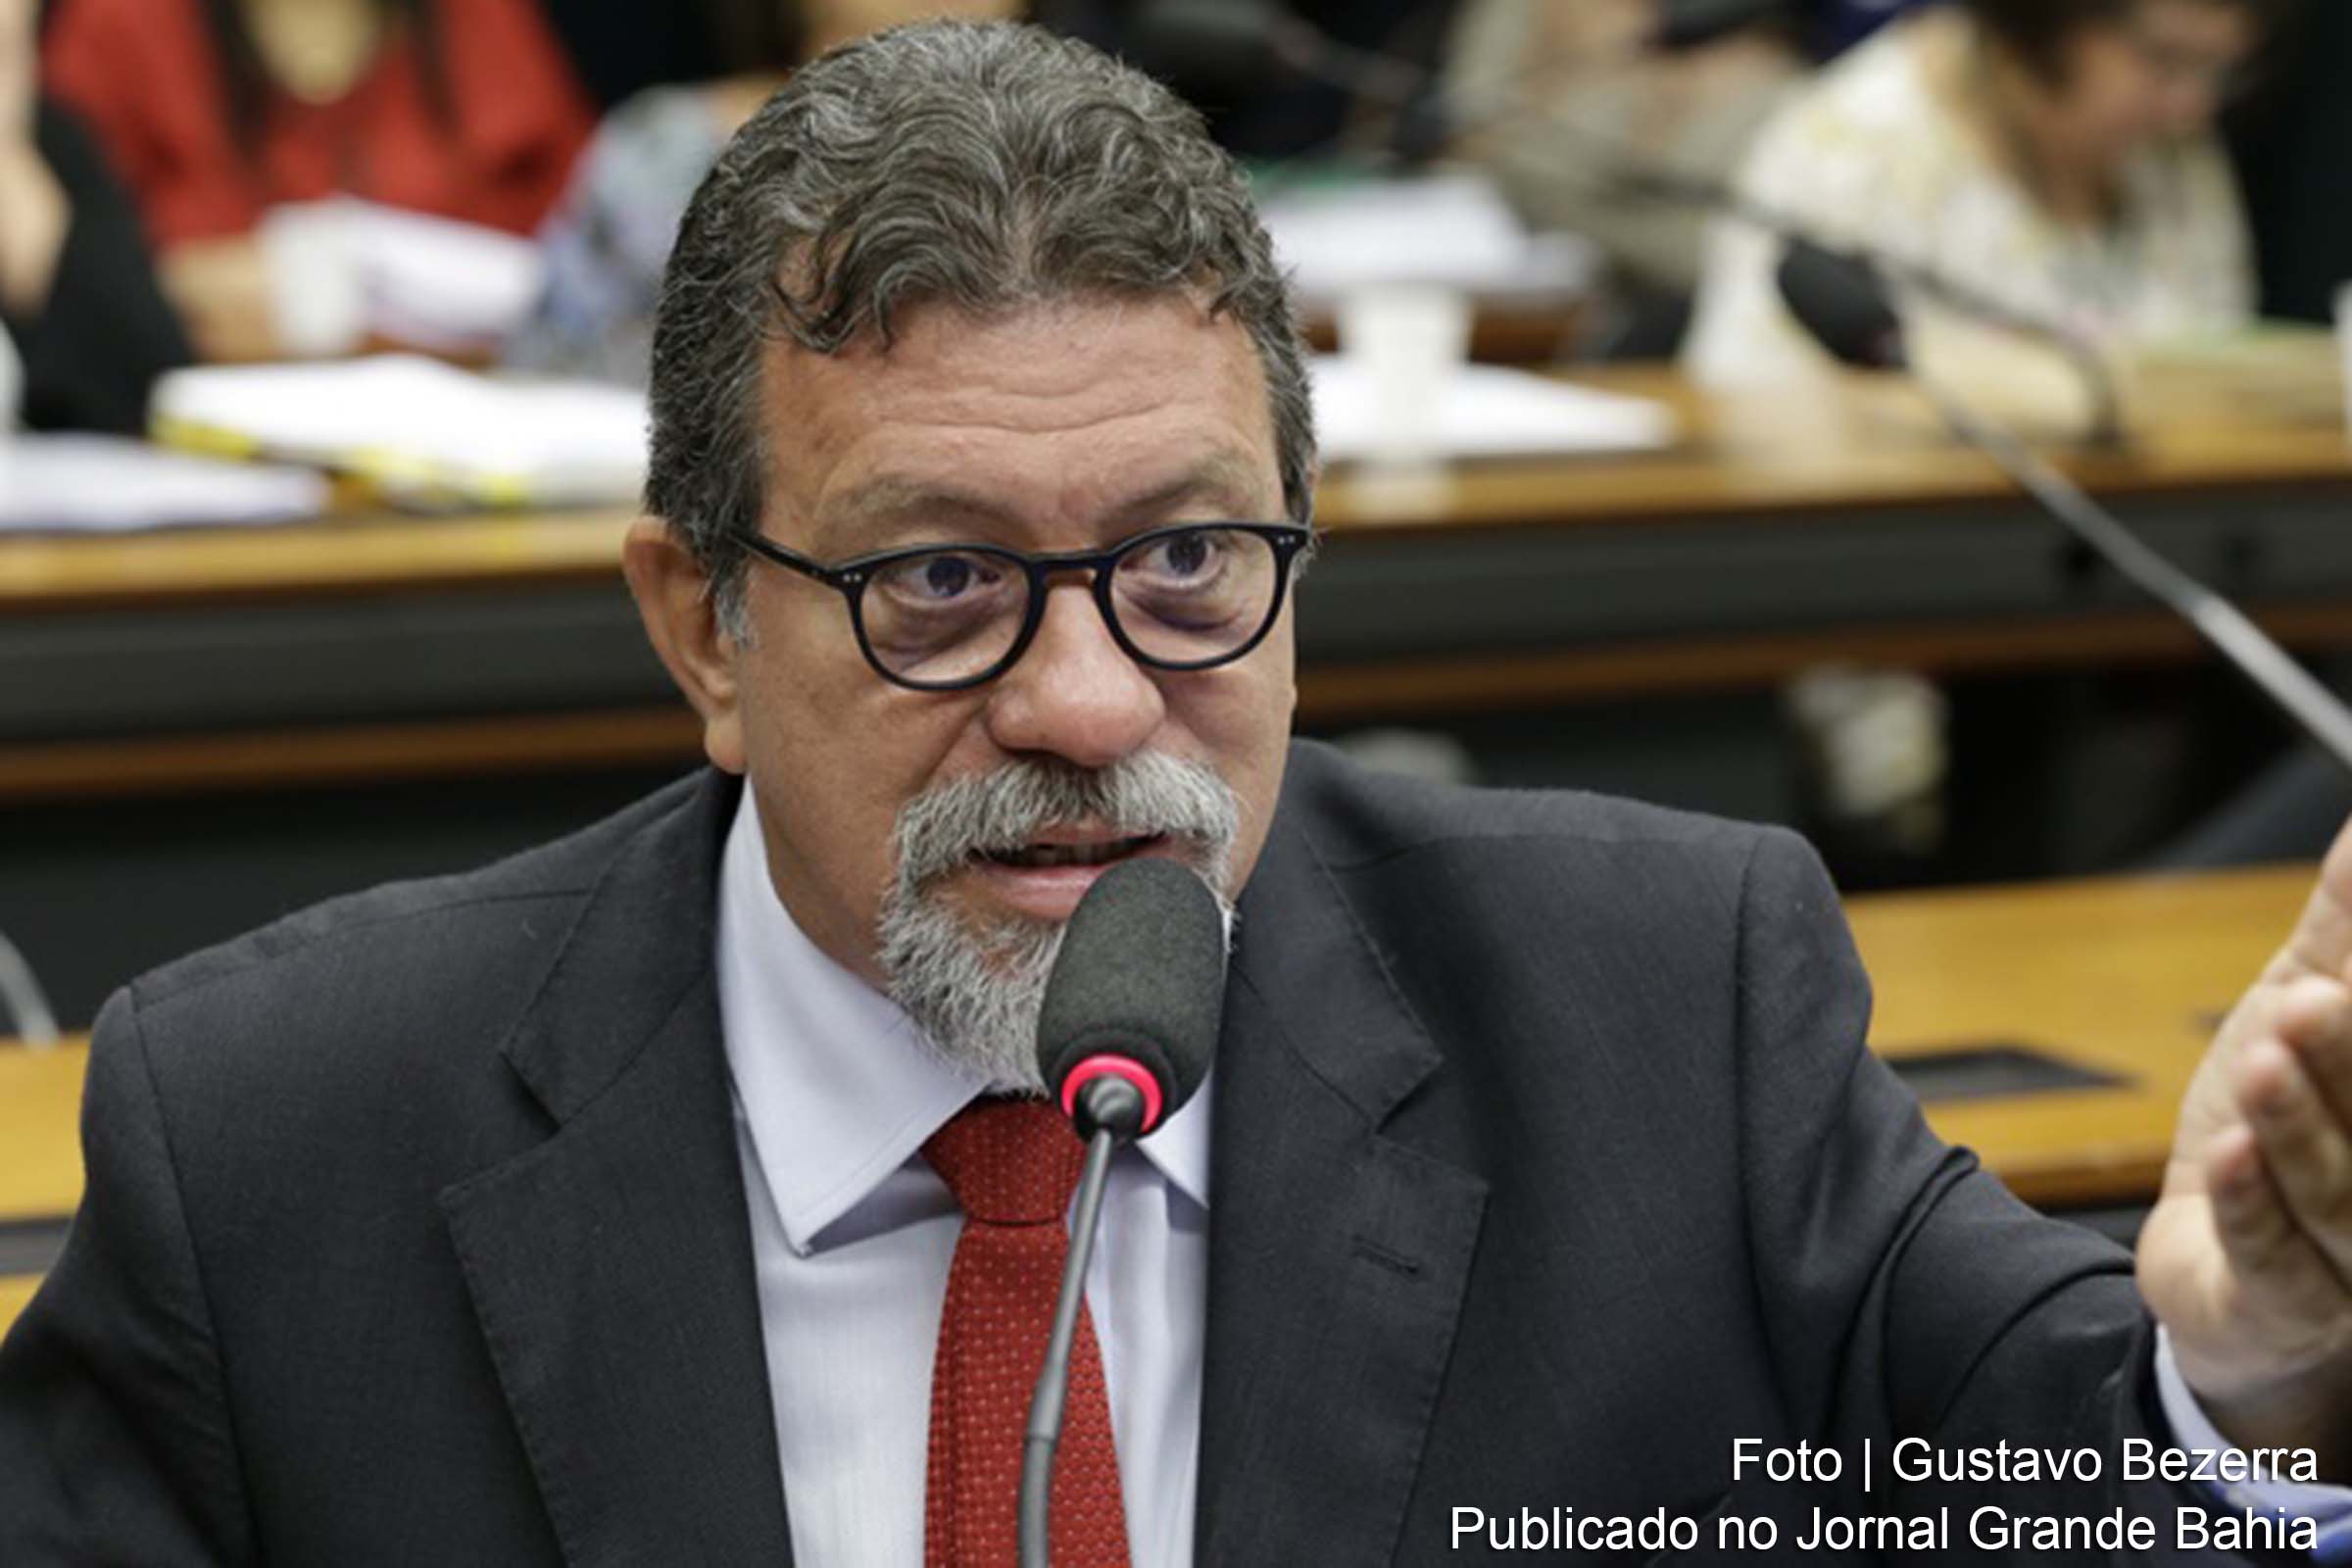 Afonso Florence: Vou entrar com pedido judicial pelo impedimento de Ricardo Salles. Ele propõe que o governo aproveite a crise sanitária para desregulamentar a gestão ambiental.